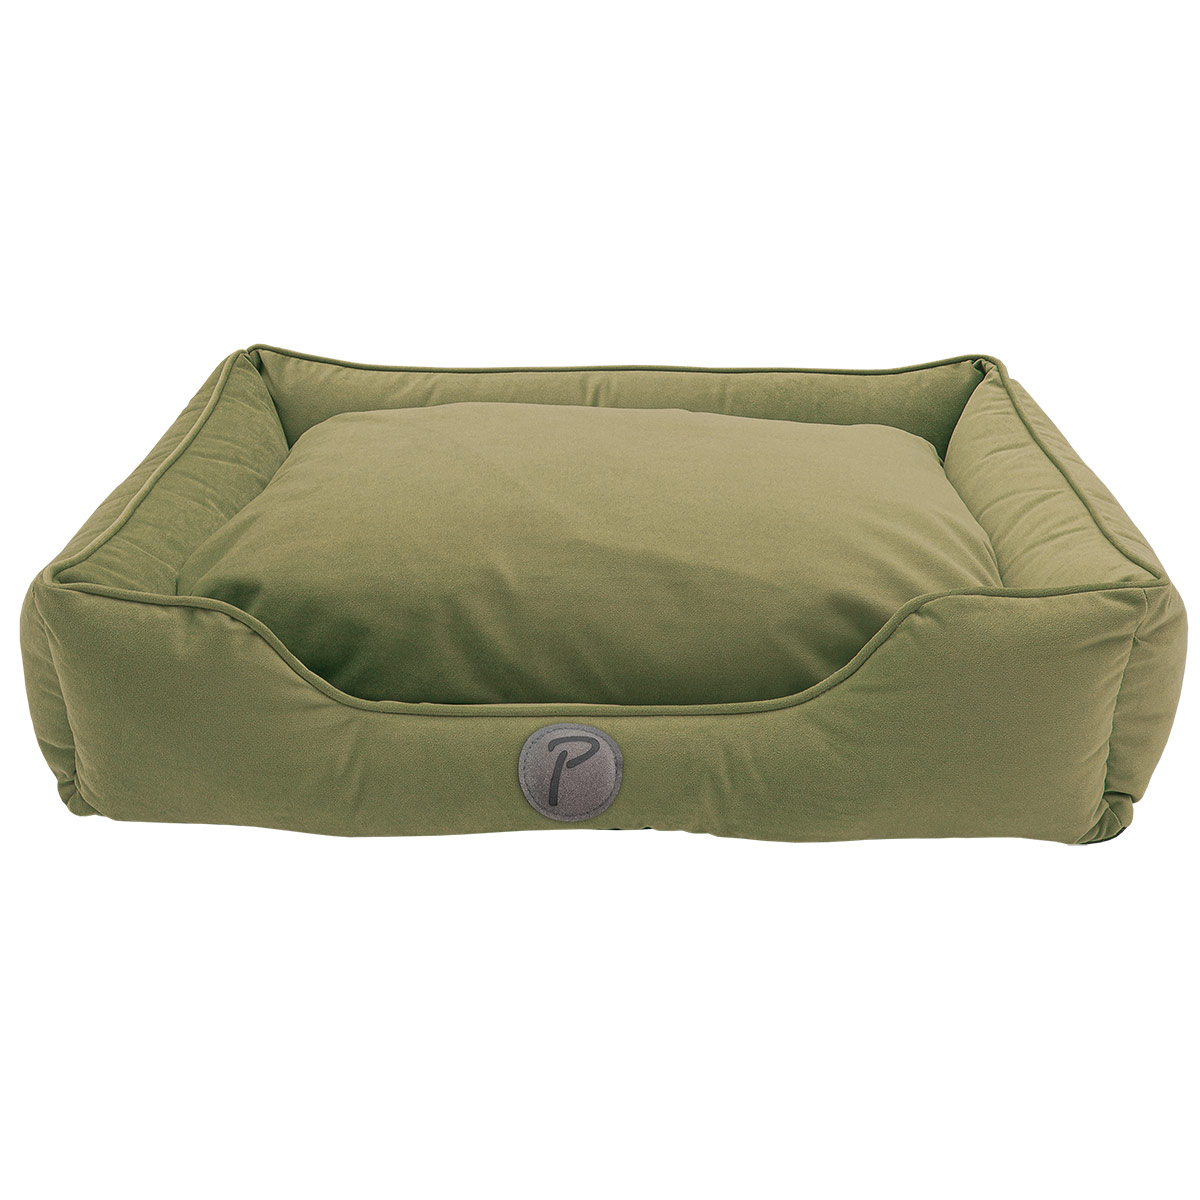 Petlando Paul pelíšek pro psy, olivově zelený L 110 × 80 × 20 cm